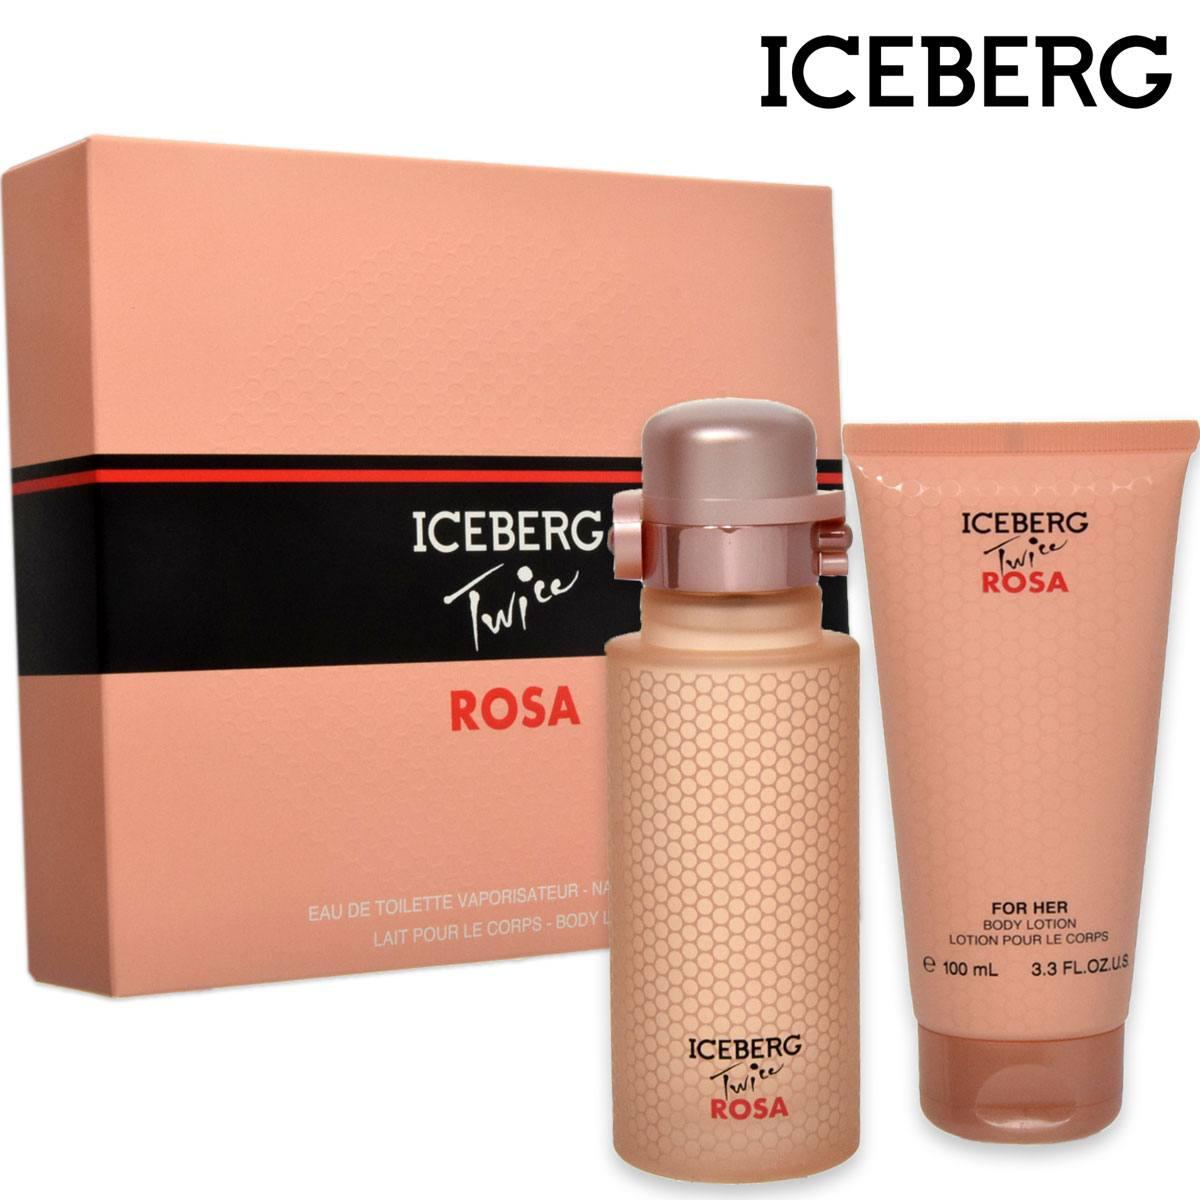 125 ml her conf. twice Iceberg for edt lotion reg. + ml body Iceberg rosa 8057714450395 100